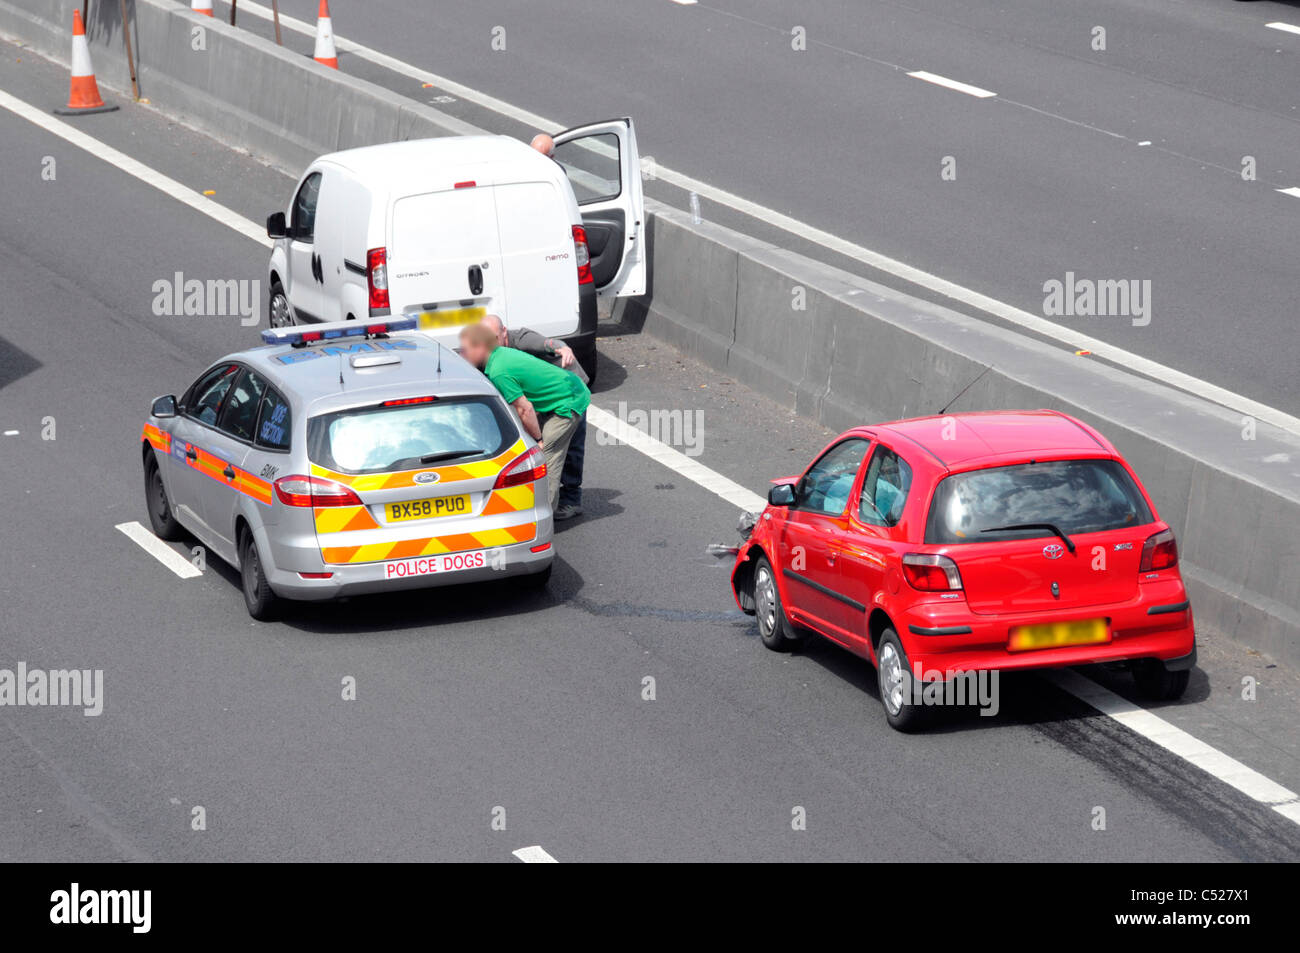 Vista aerea i veicoli autostradali del Regno Unito stazionari nella corsia 4 incidente che coinvolgono auto rossa sotto il ponte testimoni parlare con la polizia accanto a barriera di cemento d'urto Foto Stock